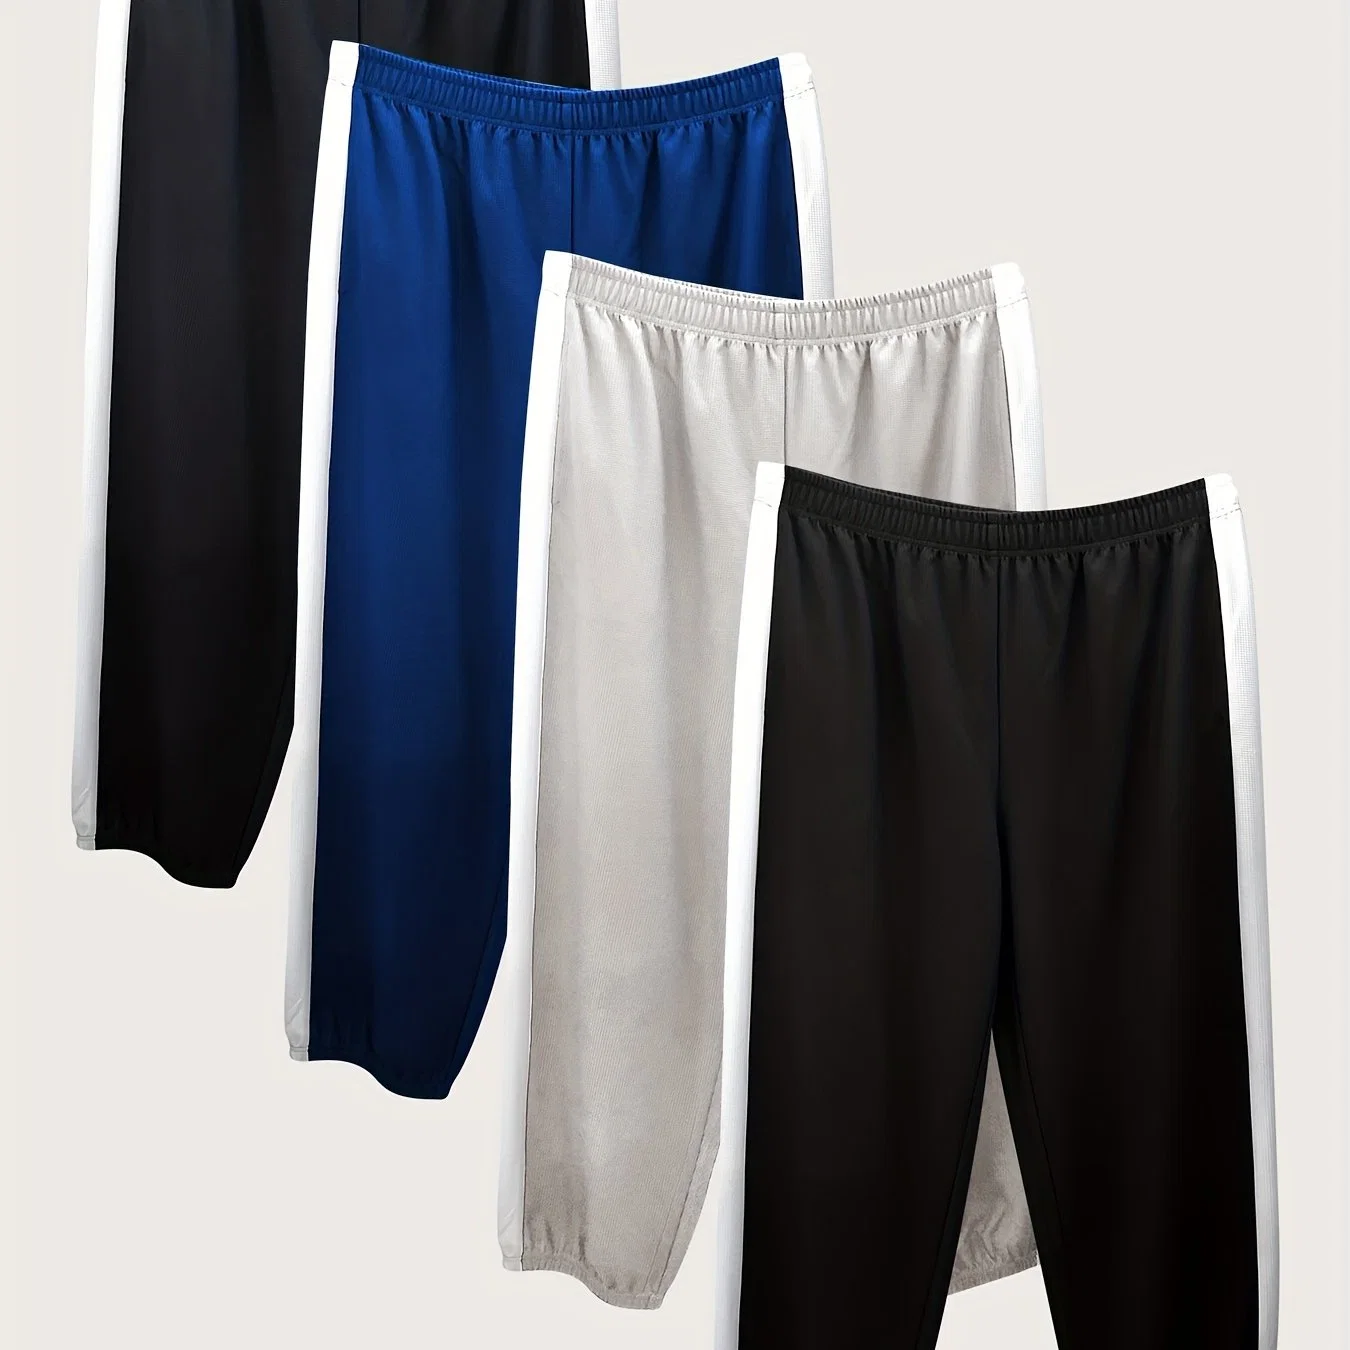 Популярные оптовые продажи Размеры мужские вафельные брюки 4-PC сбоку Мужские брюки Pant Clause Sports Sweat Pants Plus Size